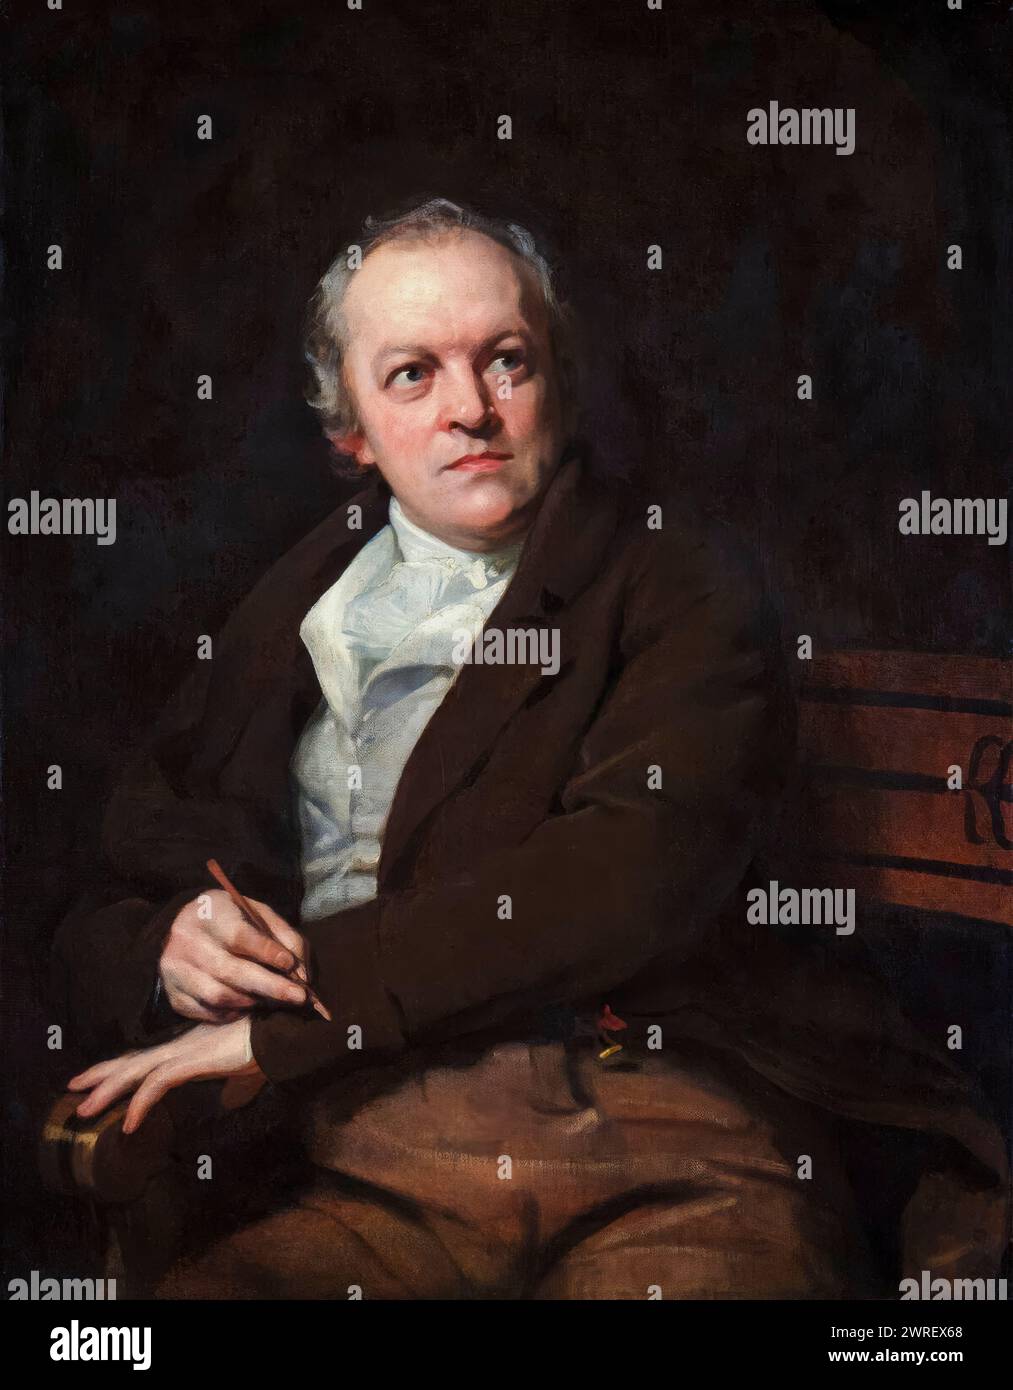 William Blake (1757-1827), poète, peintre et graveur anglais, portrait peint à l'huile sur toile par Thomas Phillips, 1807 Banque D'Images